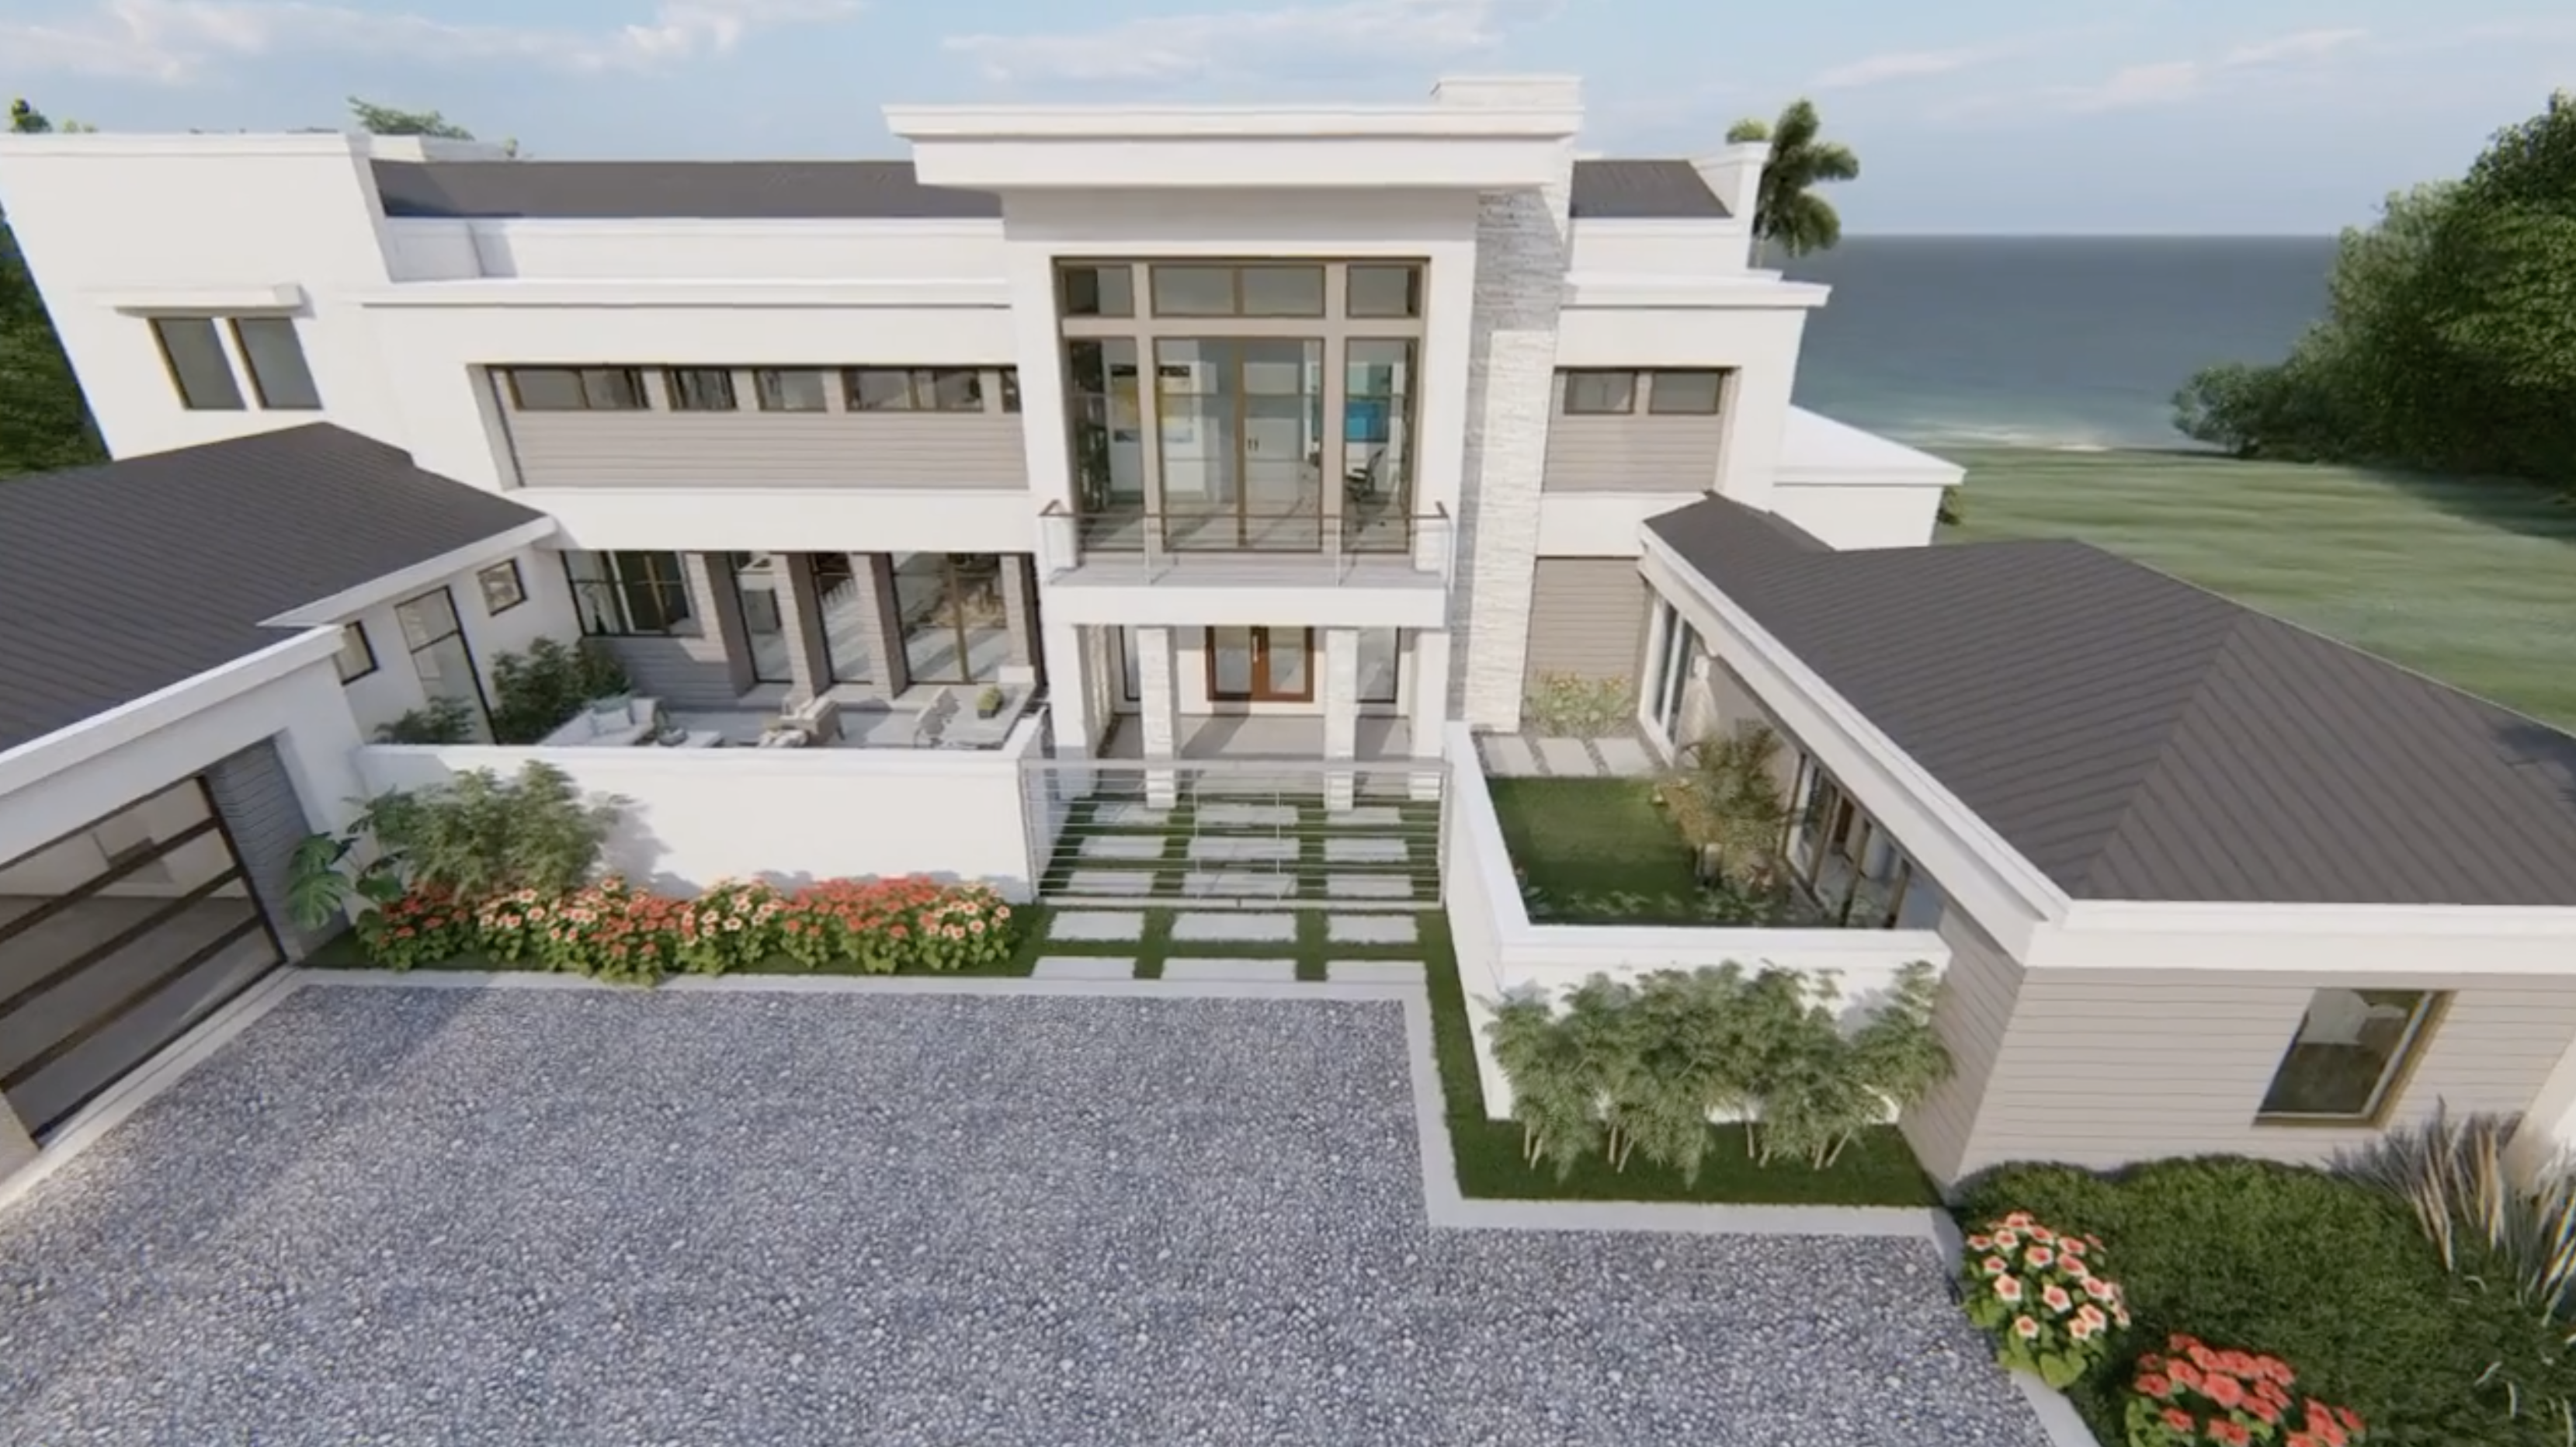 Phil Kean Design Group 3D Architectural Rendering for Modern Homes | Phil Kean Design Group